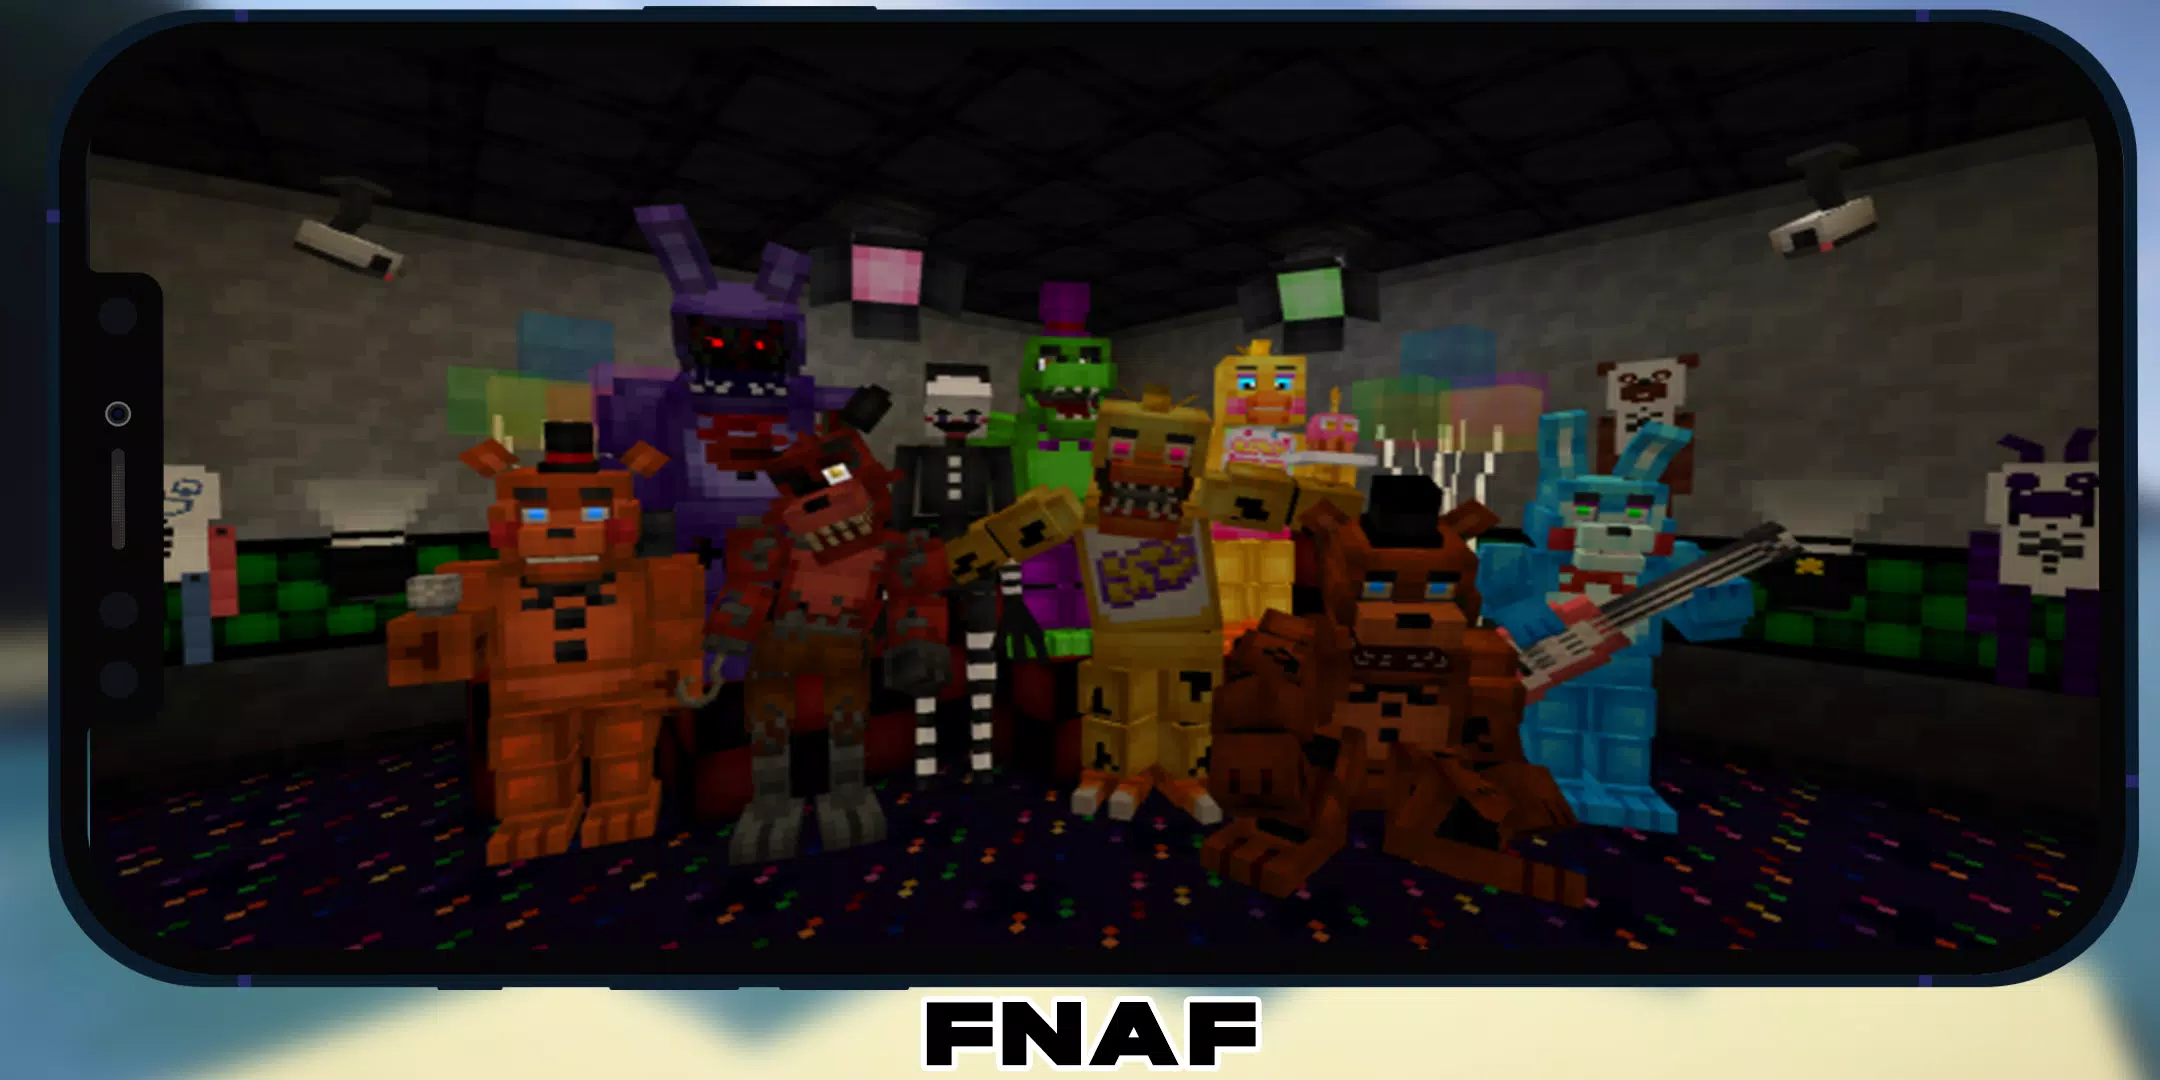 Fnaf Mods Minecraft - APK Download for Android